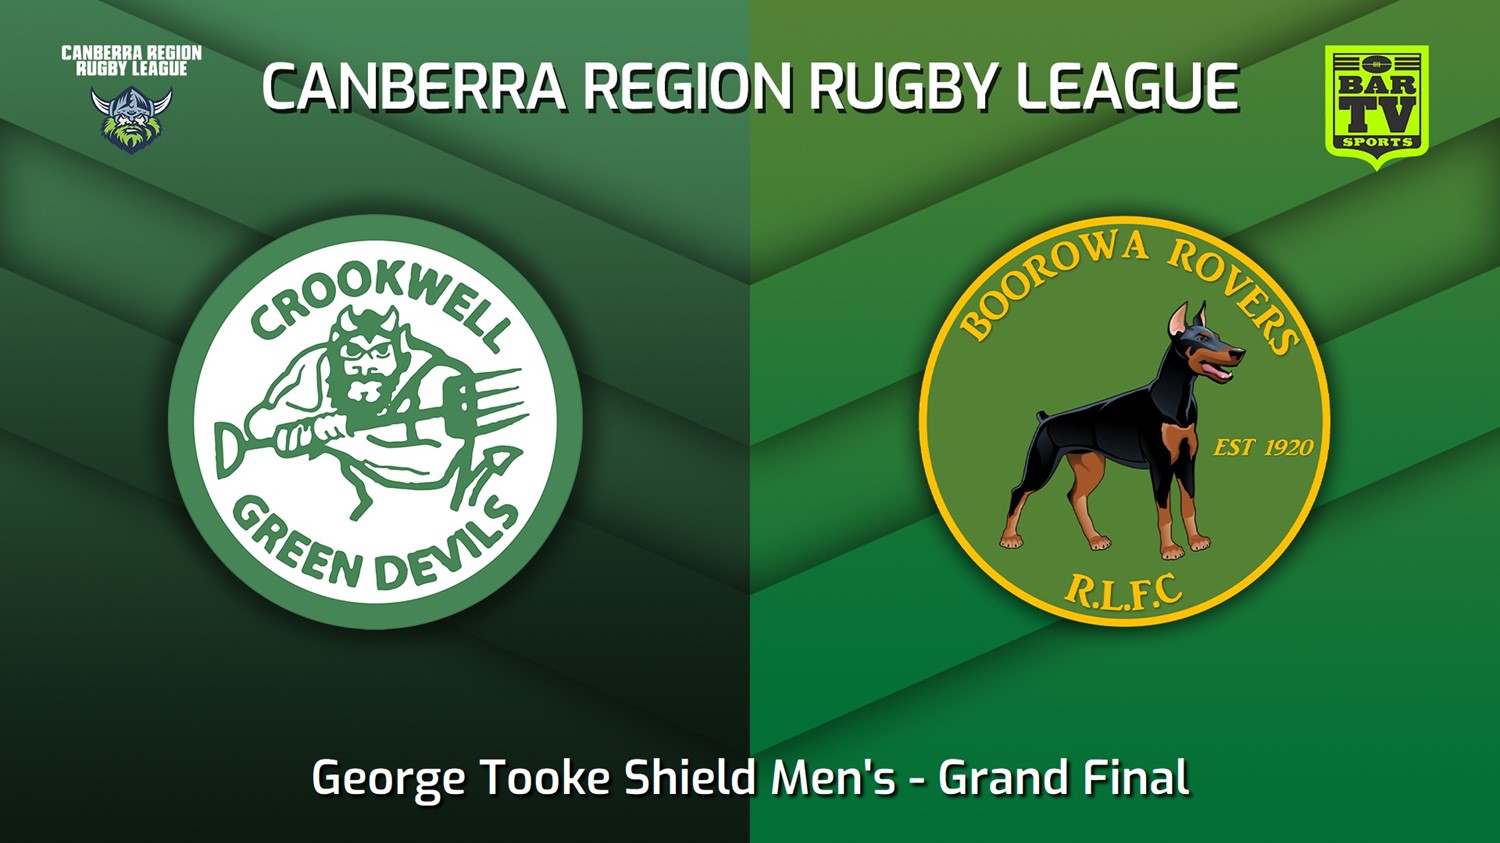 230909-Canberra Grand Final - George Tooke Shield Men's - Crookwell Green Devils v Boorowa Rovers Minigame Slate Image